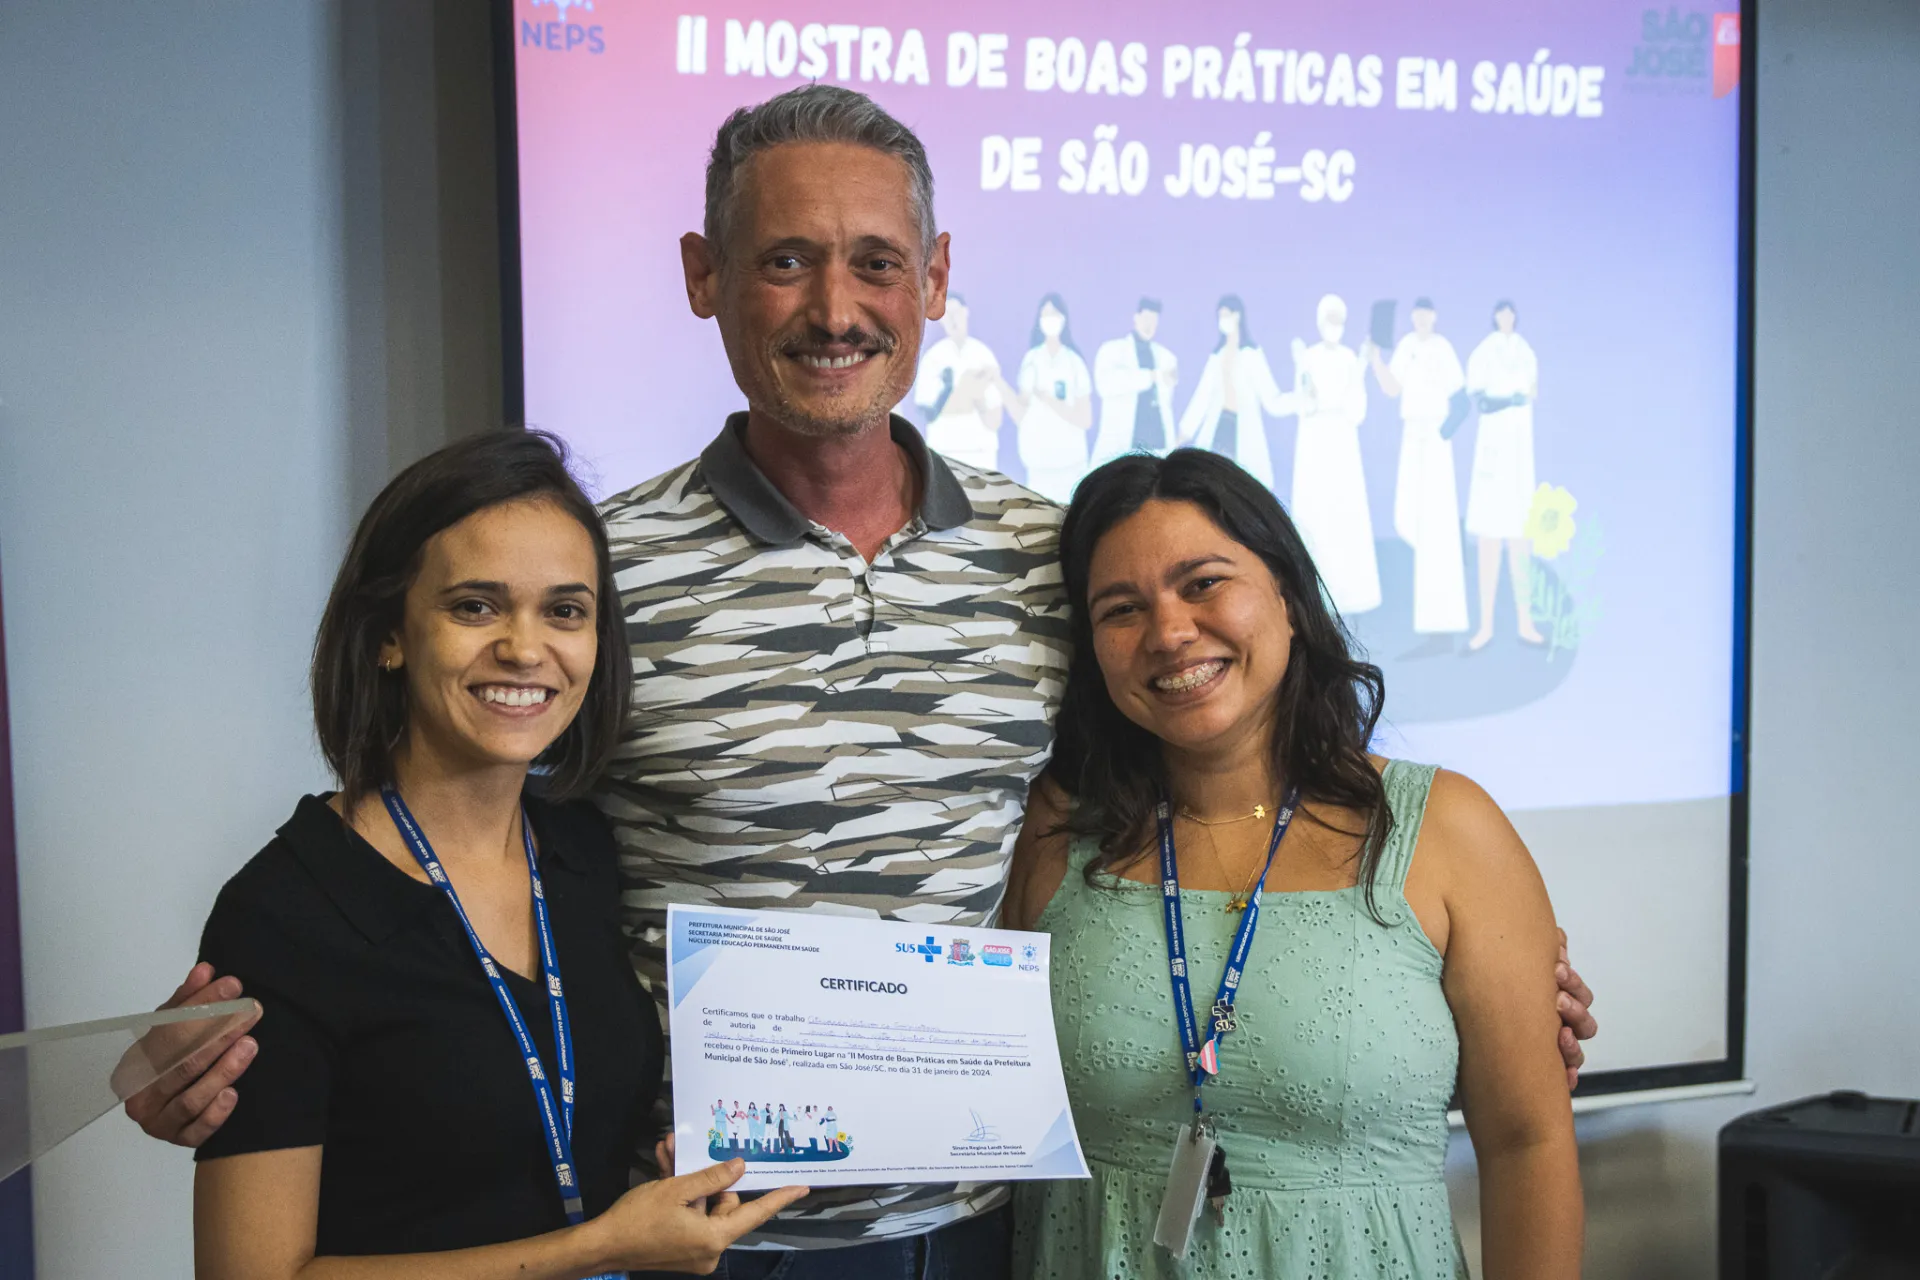 Ambulatório Trans recebe prêmio de boas práticas em saúde de São José